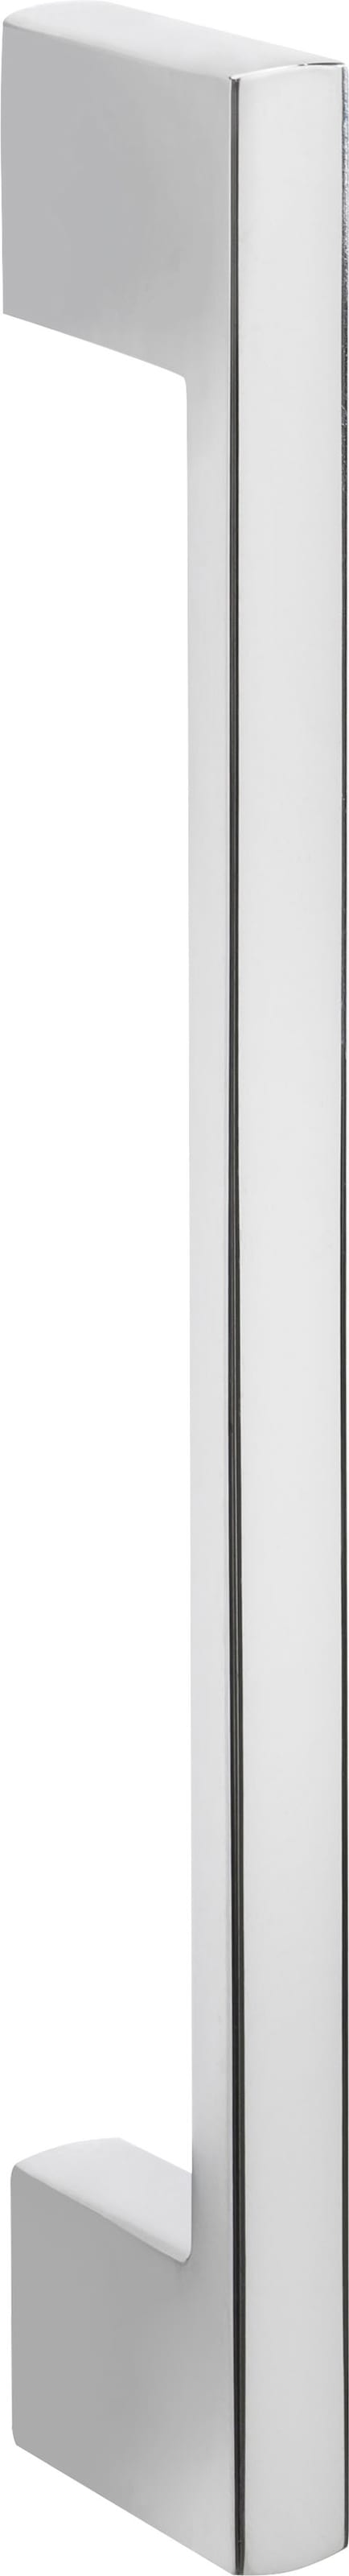 HELD MÖBEL Backofen/Kühlumbauschrank »Colmar«, 165 cm Einbaubackofen und cm hoch, Einbaukühlschrank für im jetzt %Sale 60 breit